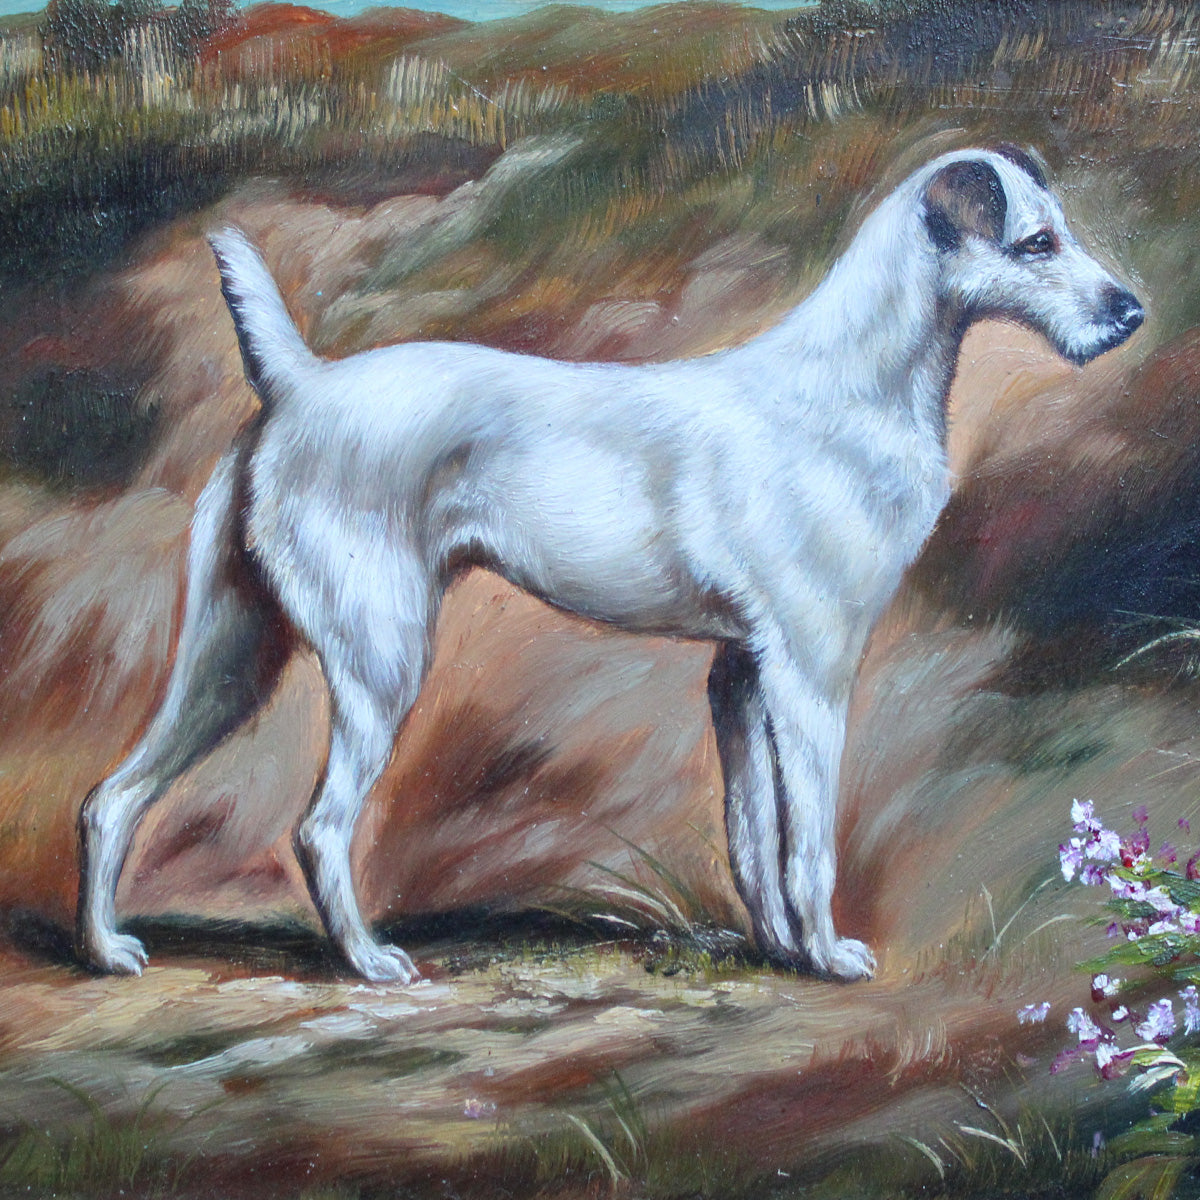 Maleri med hund i gammel stil i flot natur